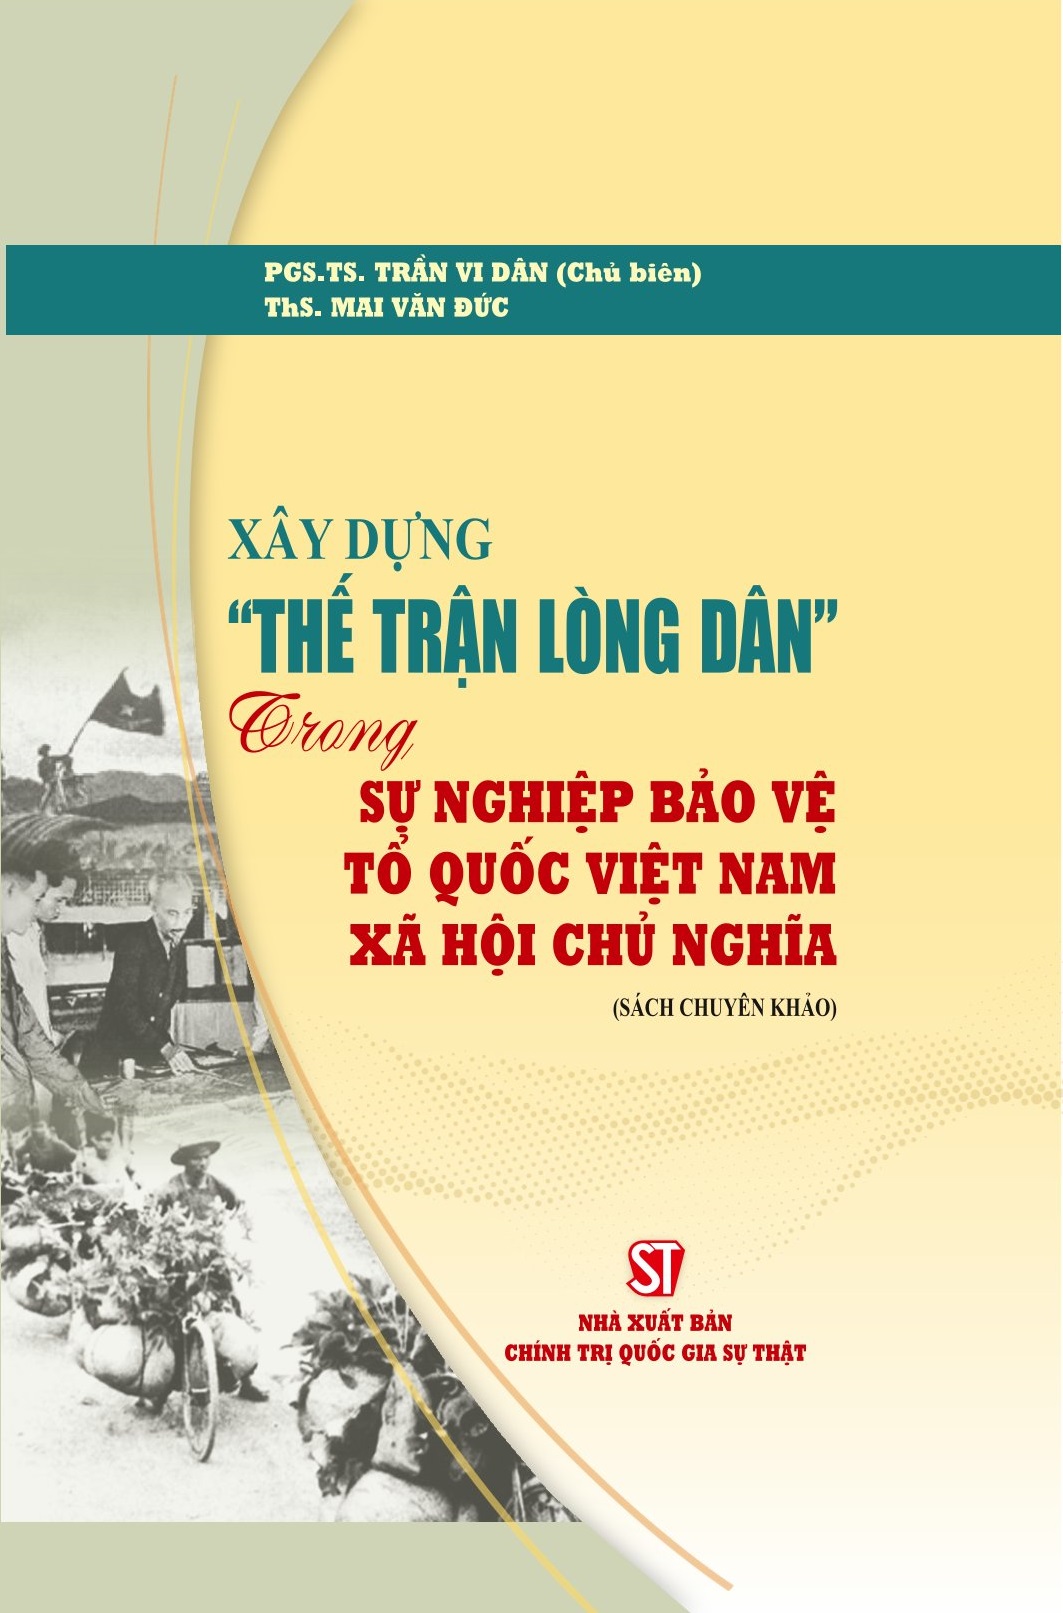 Xây dựng “thế trận lòng dân” trong sự nghiệp bảo vệ Tổ quốc Việt Nam xã hội chủ nghĩa